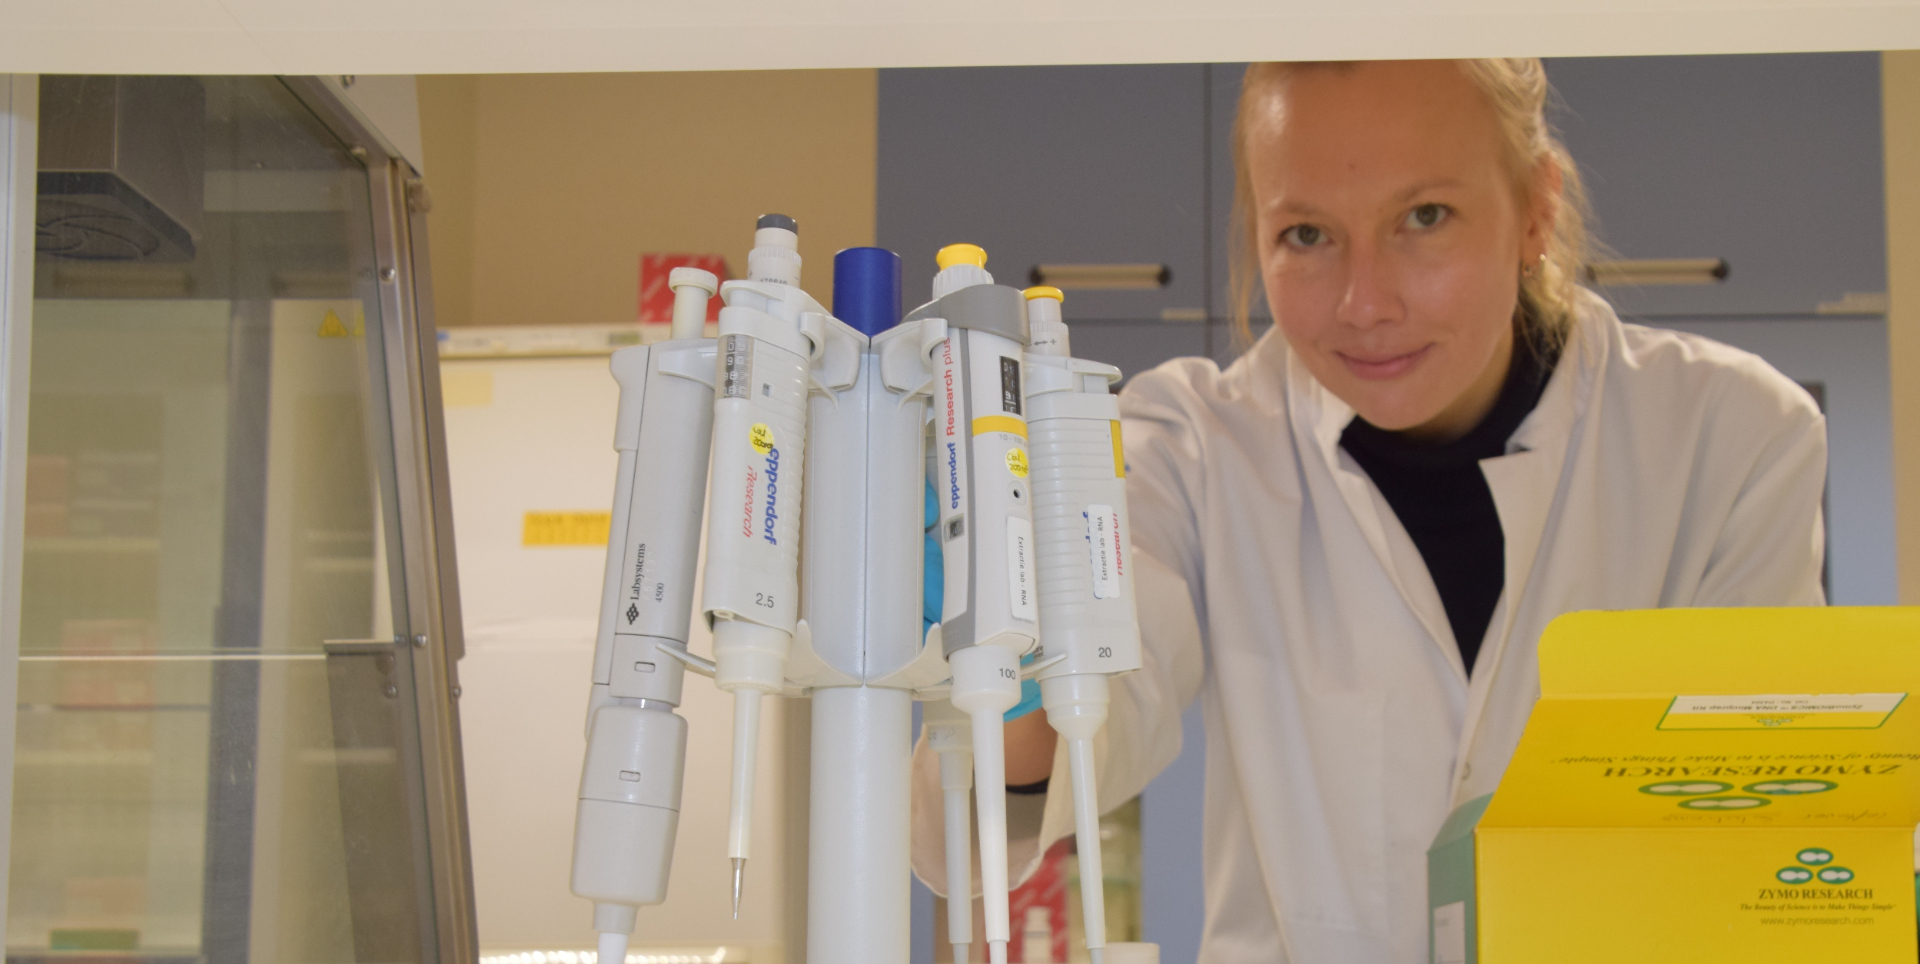 Annika Vaksmaa at the NIOZ lab